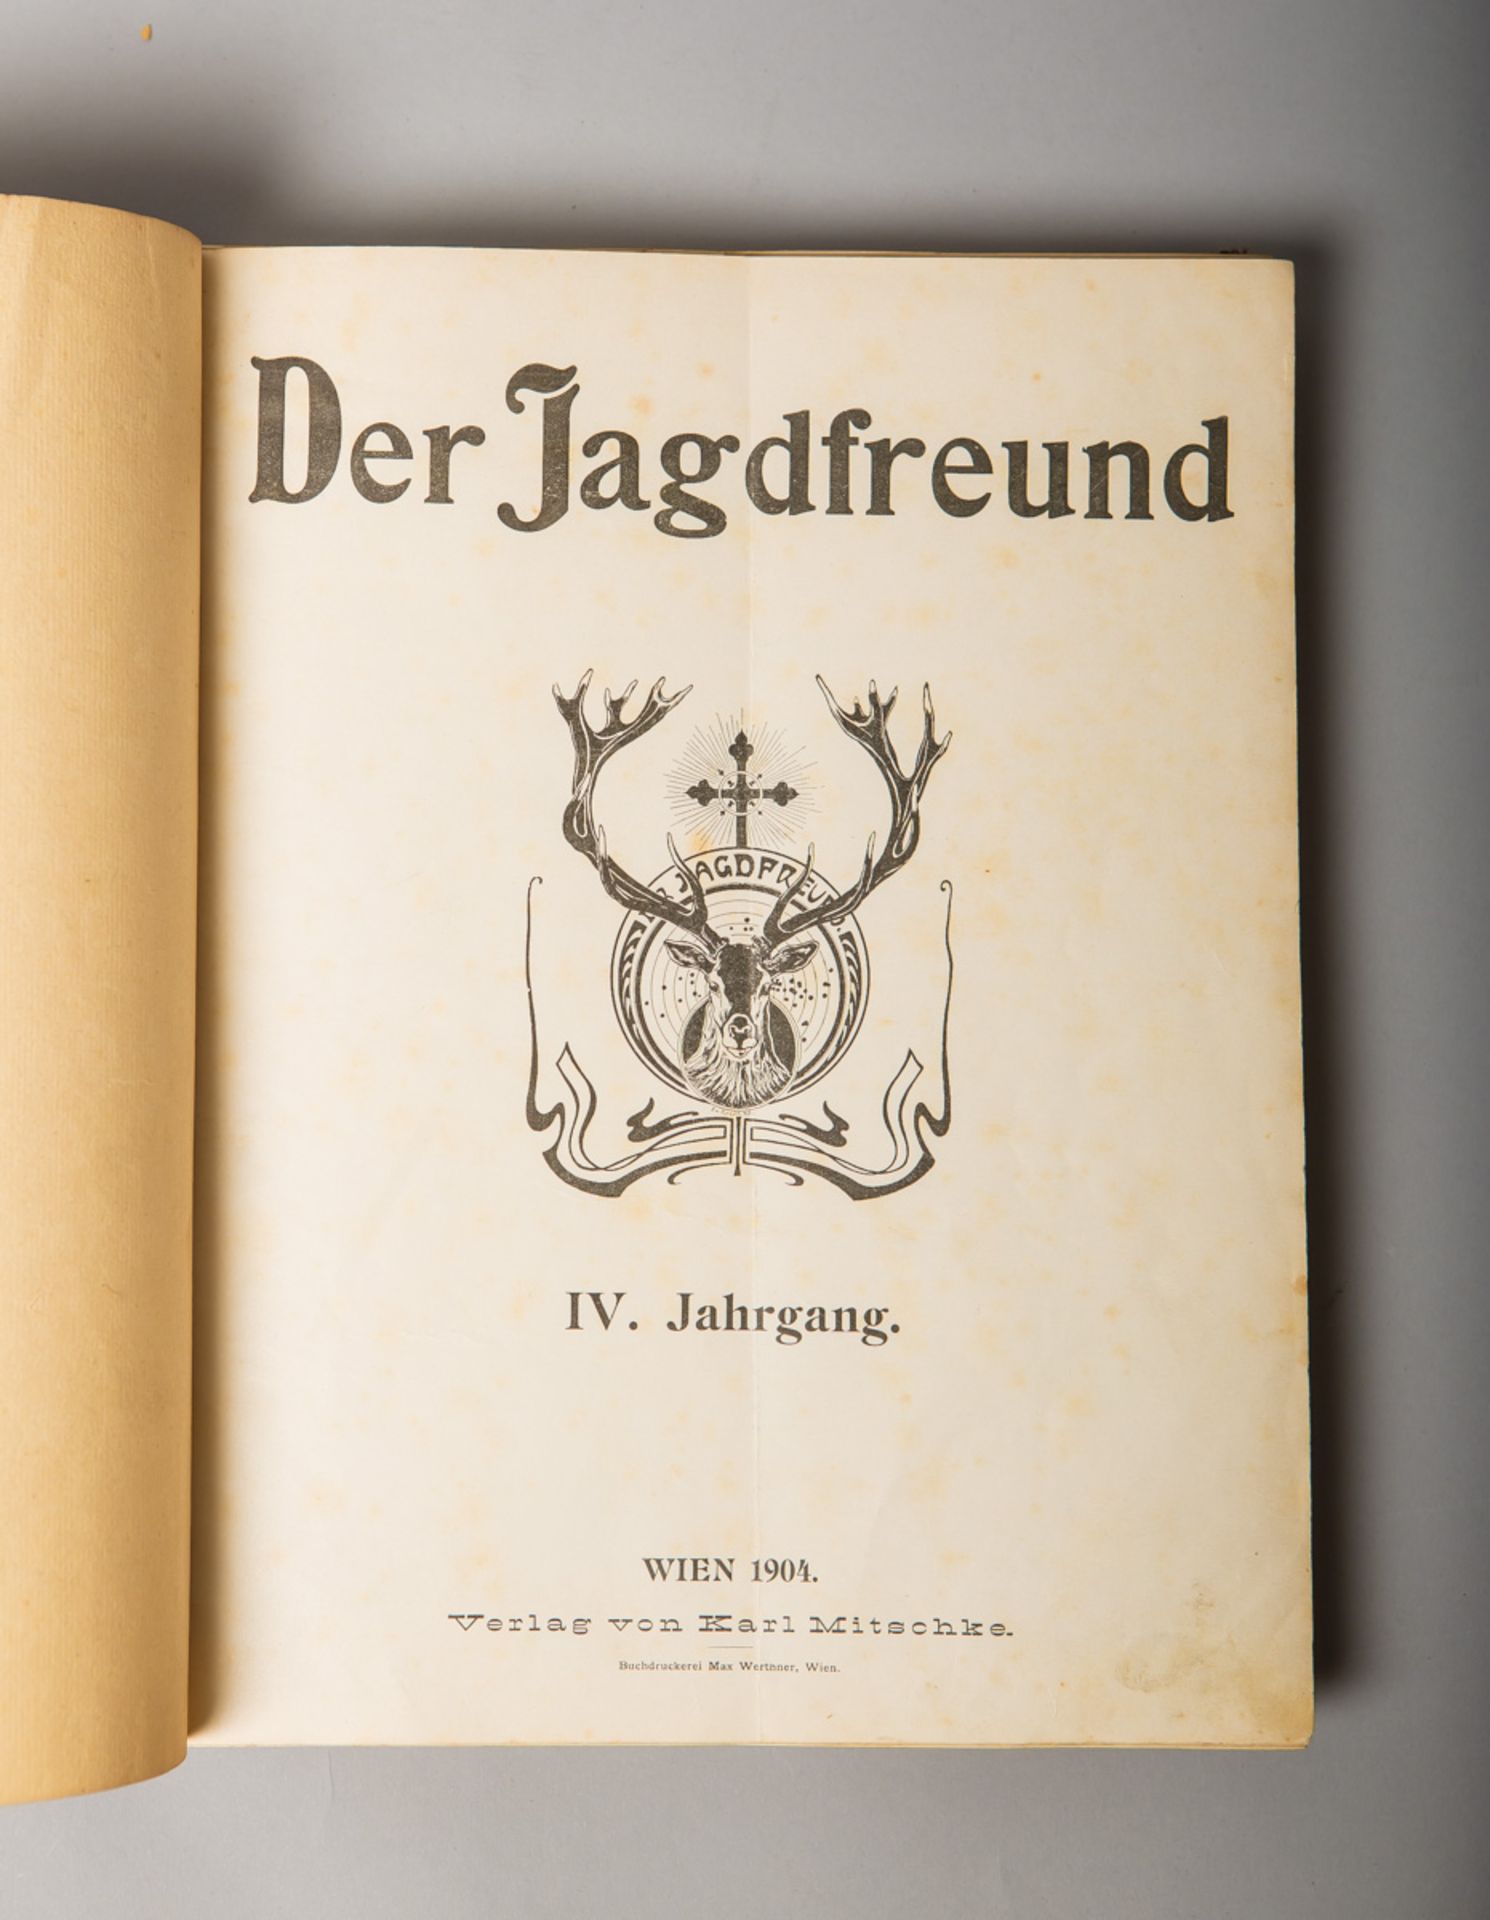 Mitschke, Karl (Hrsg.), "Der Jagdfreund. IV. Jahrgang"